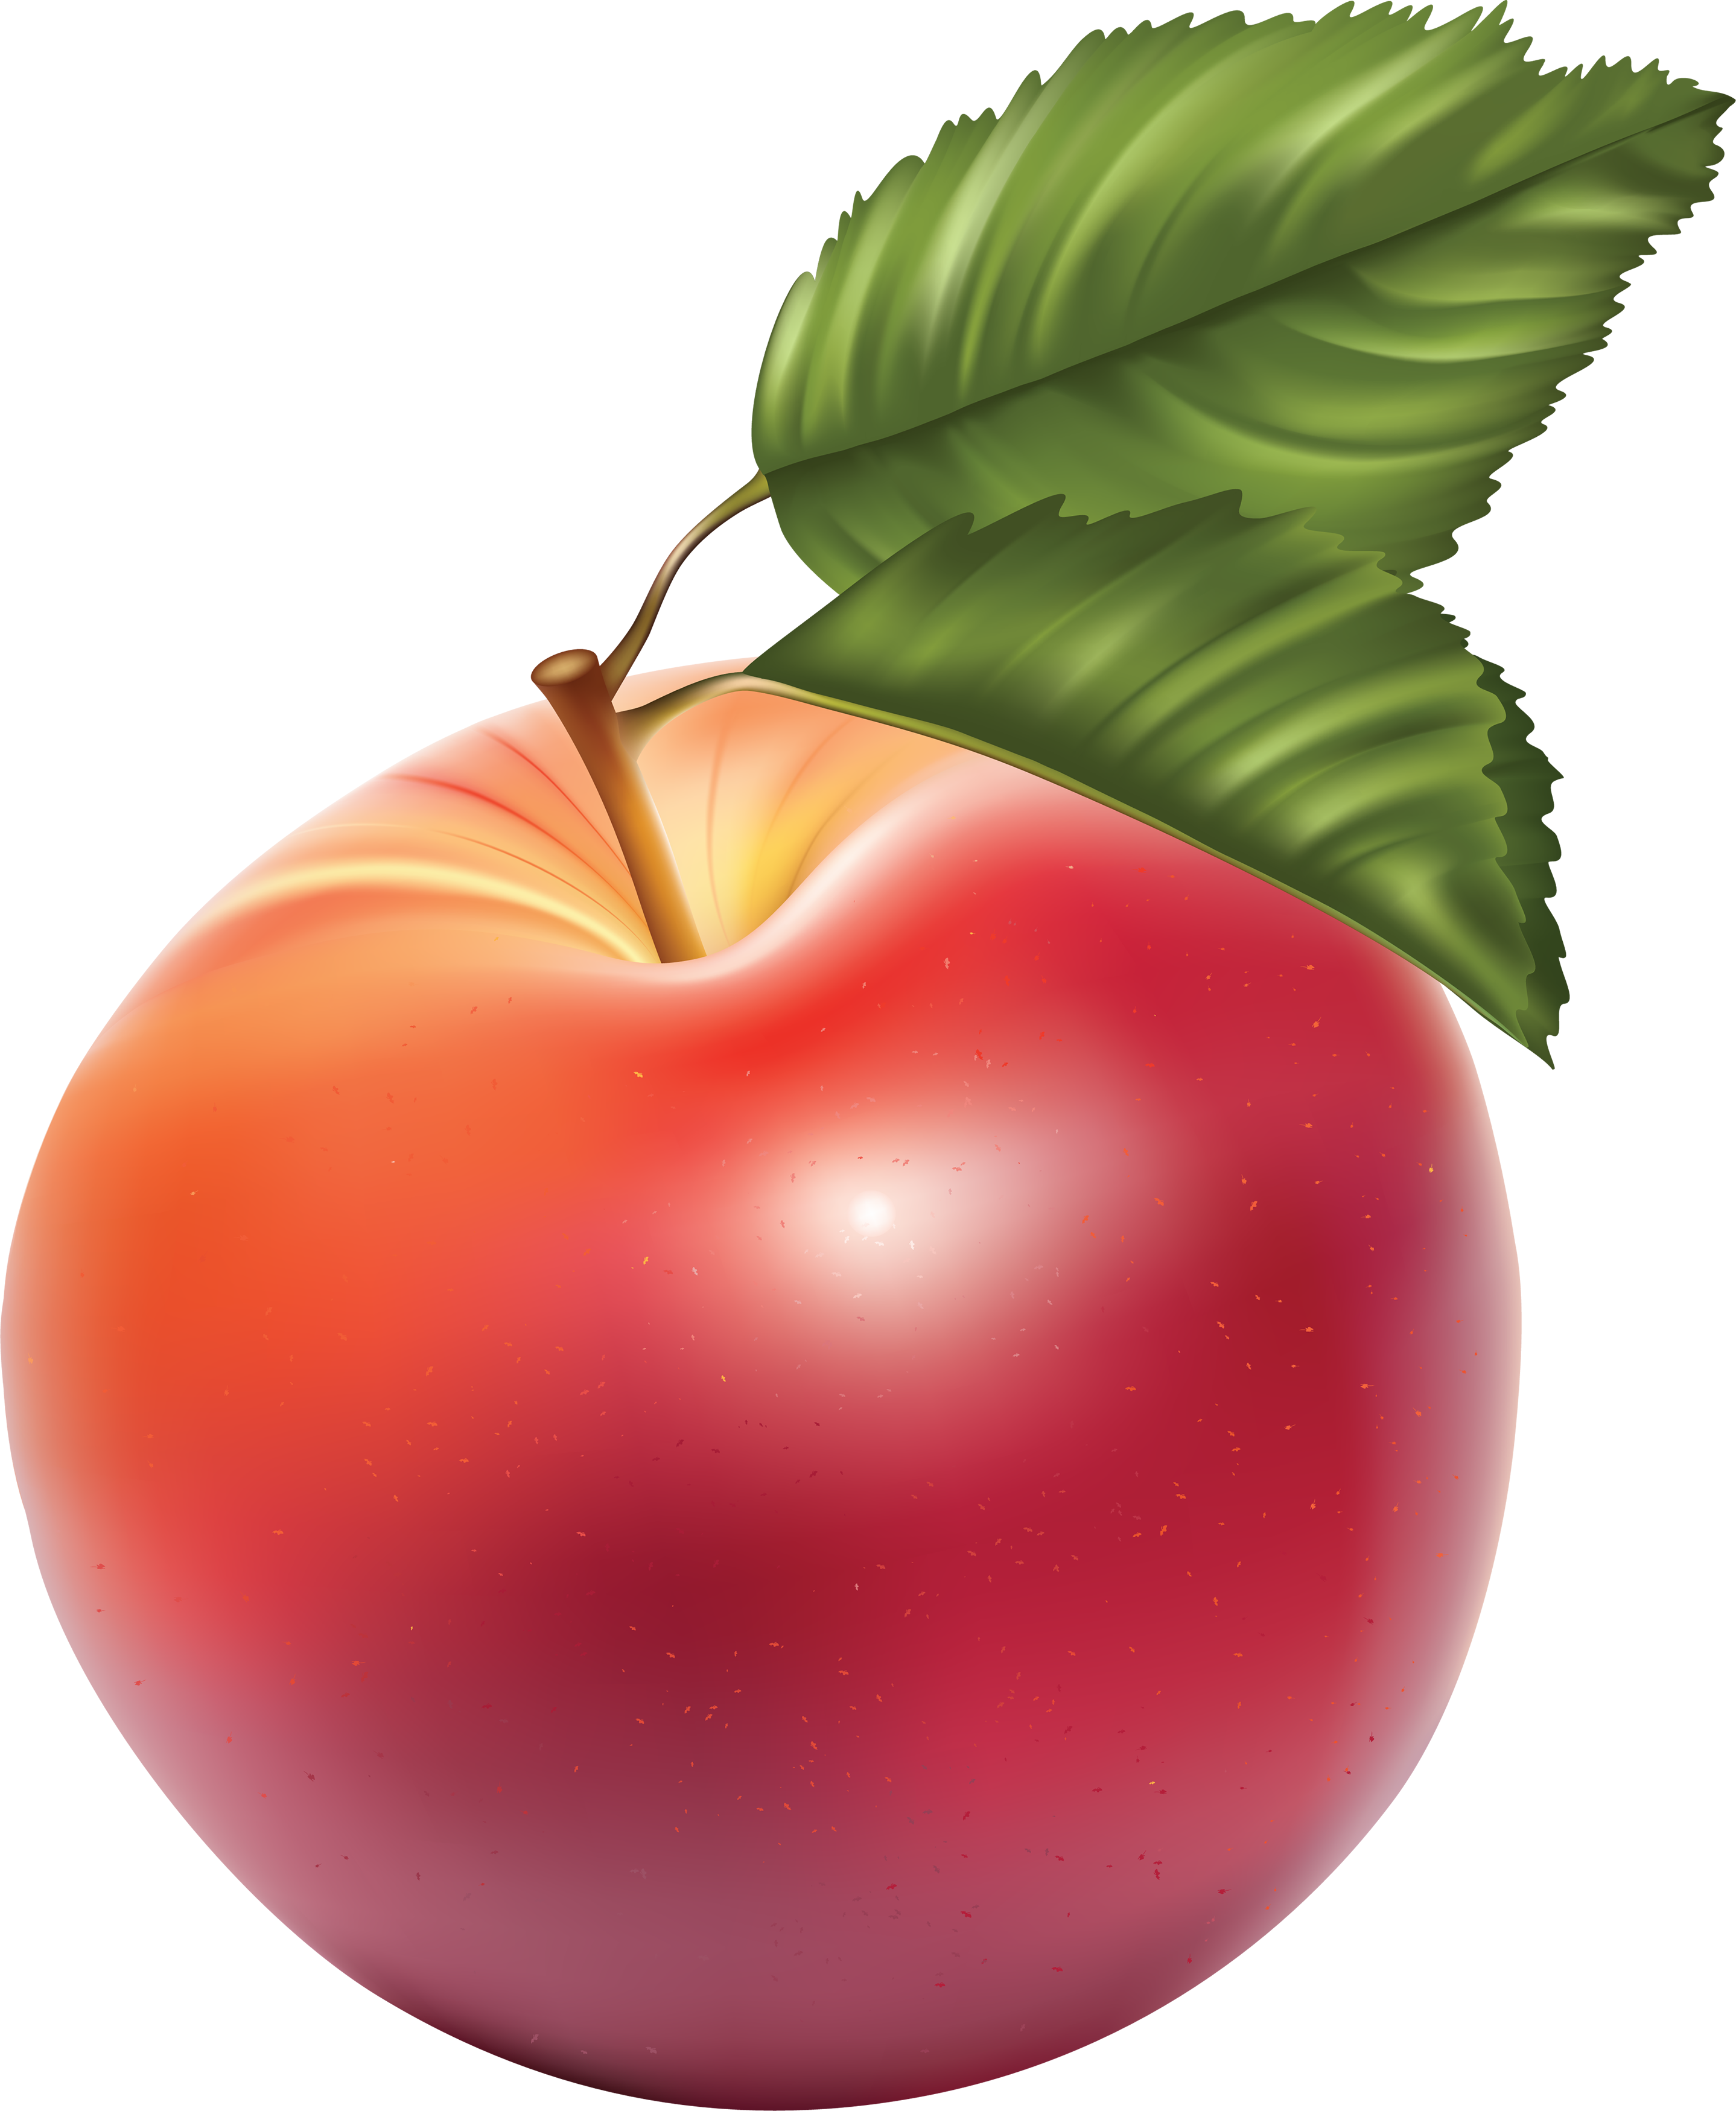 Immagine di rendering della mela rossa